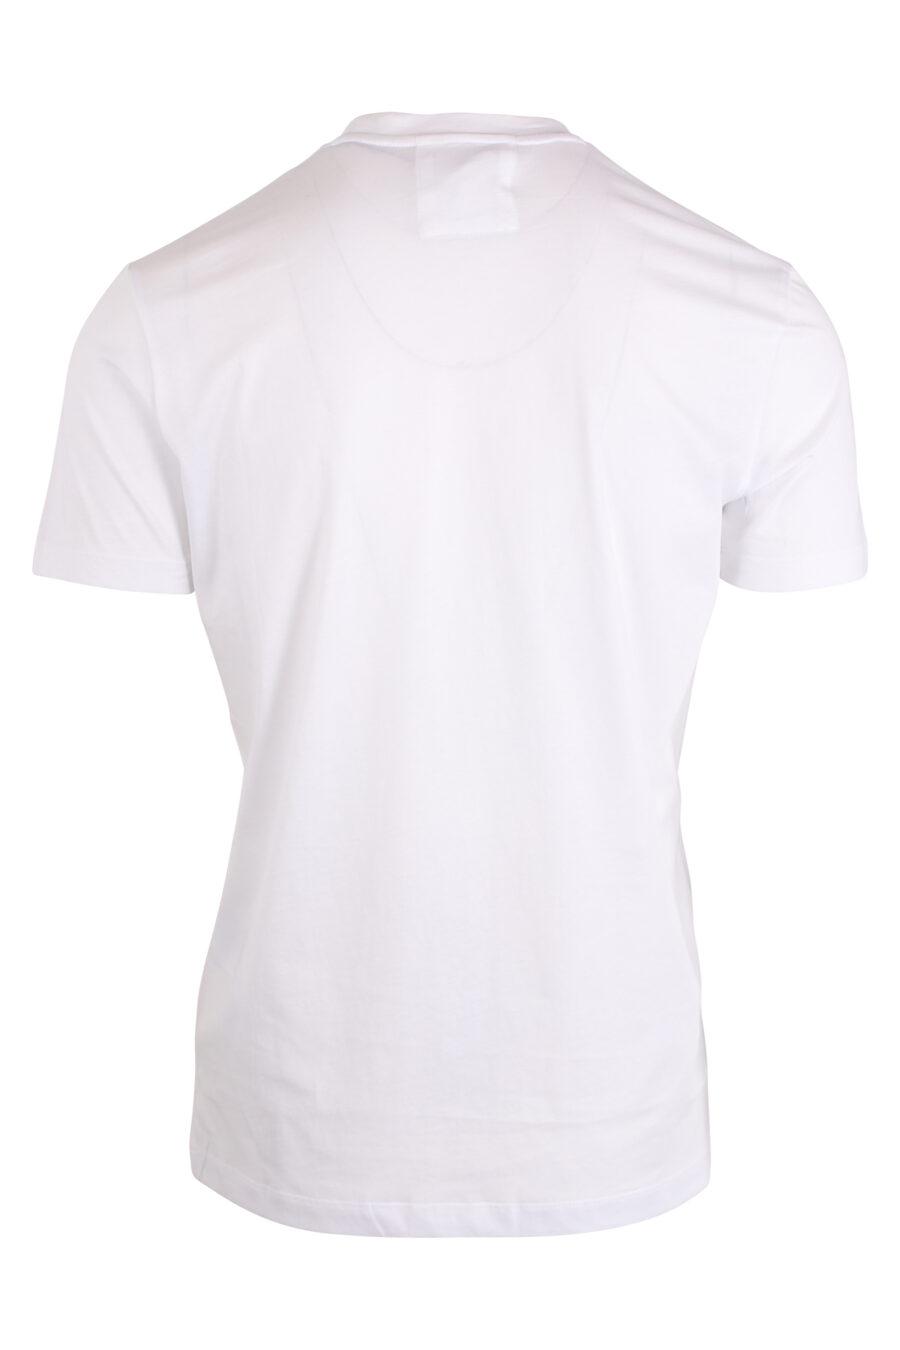 Camiseta blanca con maxilogo letras negras - IMG 4269